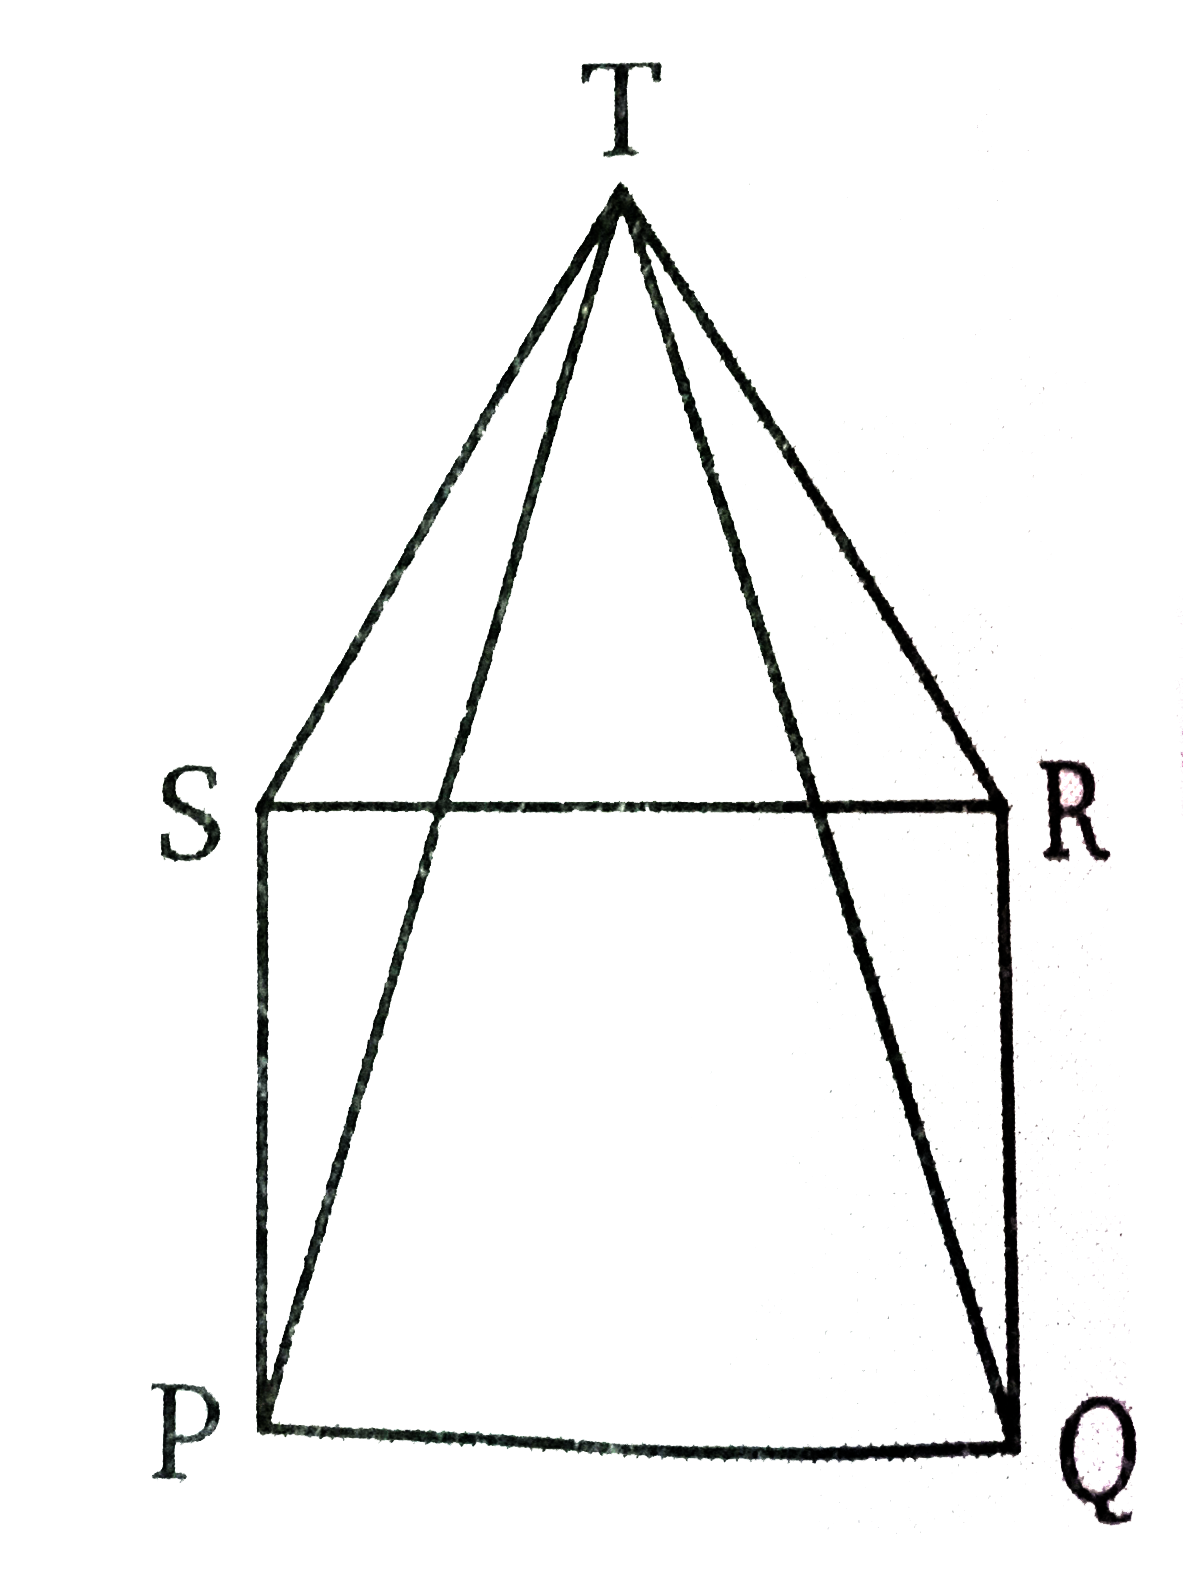 दिये गये चित्र में , एक  वर्ग PQRS तथा SRT के समबाहु  त्रिभुज  है तो सिद्ध कीजिए    (i) PT = QT   (ii)  angleQRT = 150^(@)